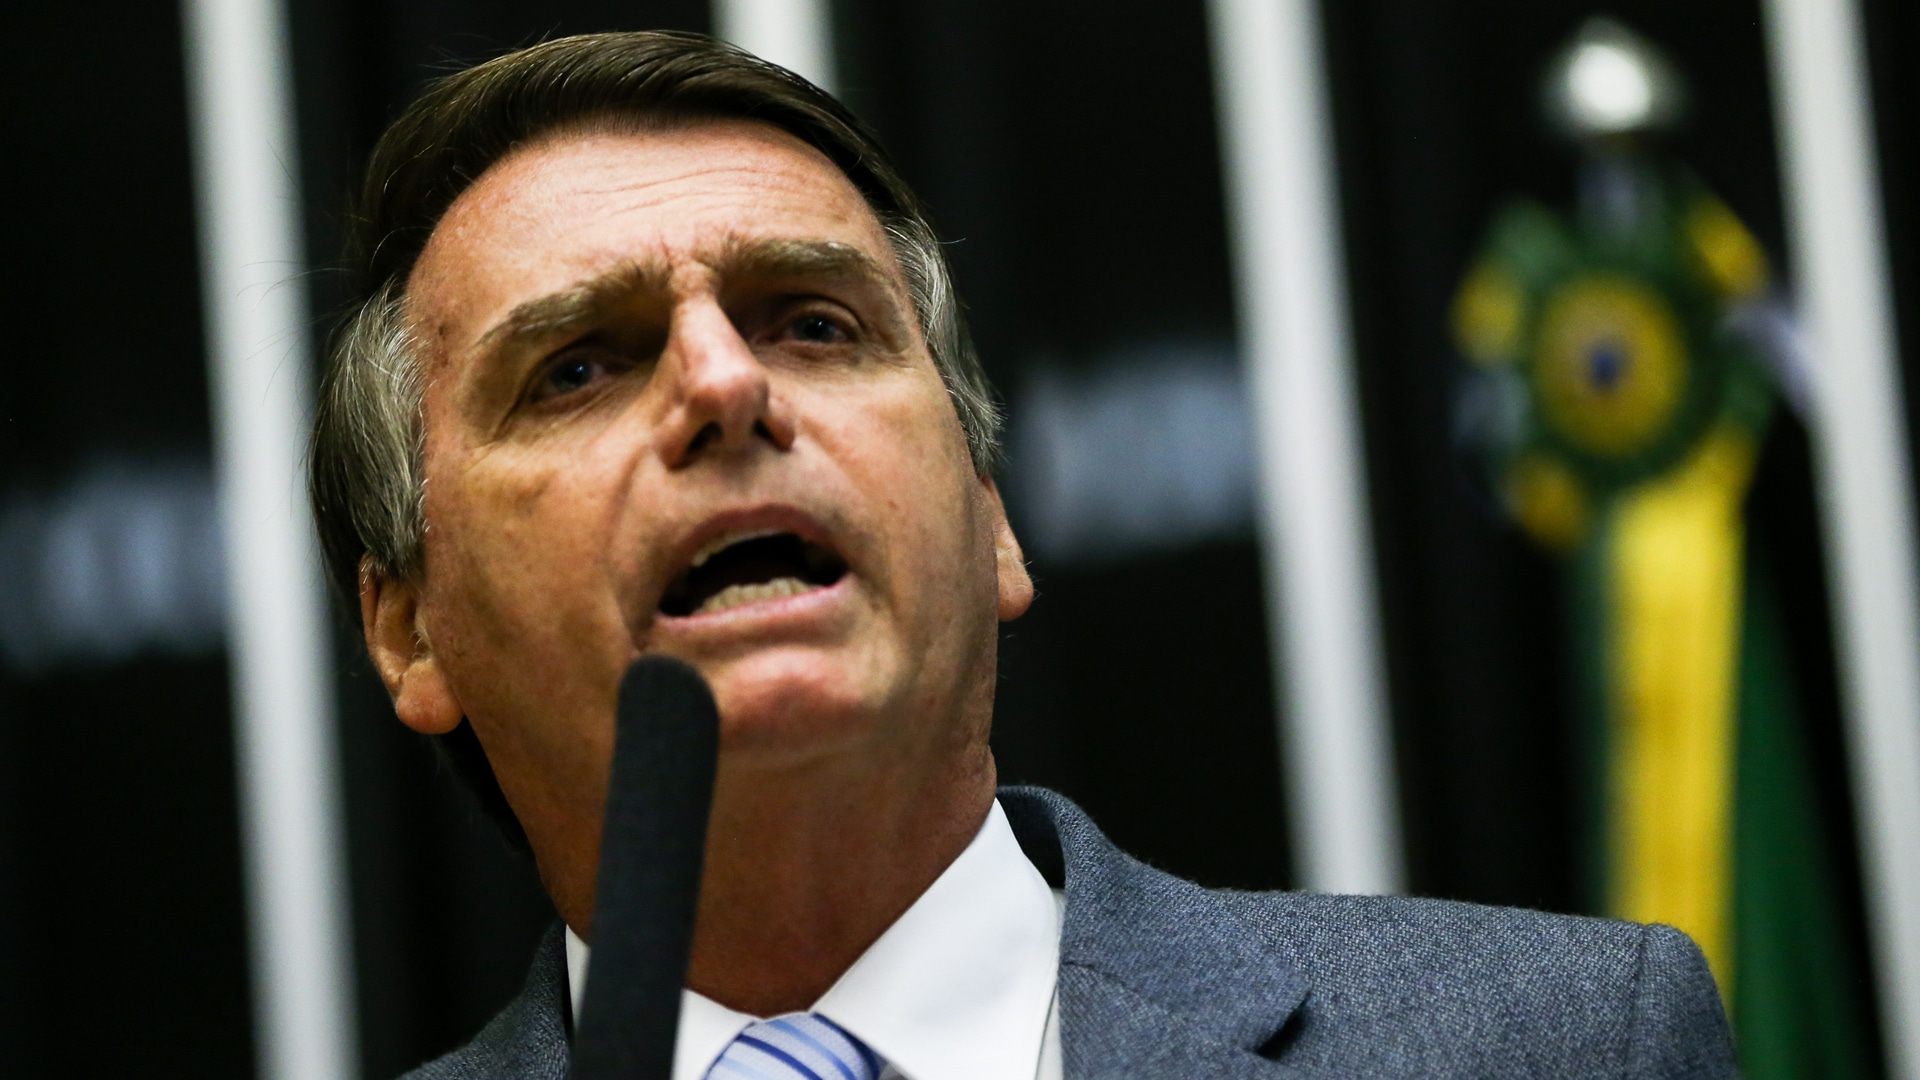 Der rechts-konservative Jair Bolsonaro ist seit Januar 2019 der Präsident Brasiliens und beliebt bei evangelikalen Christen